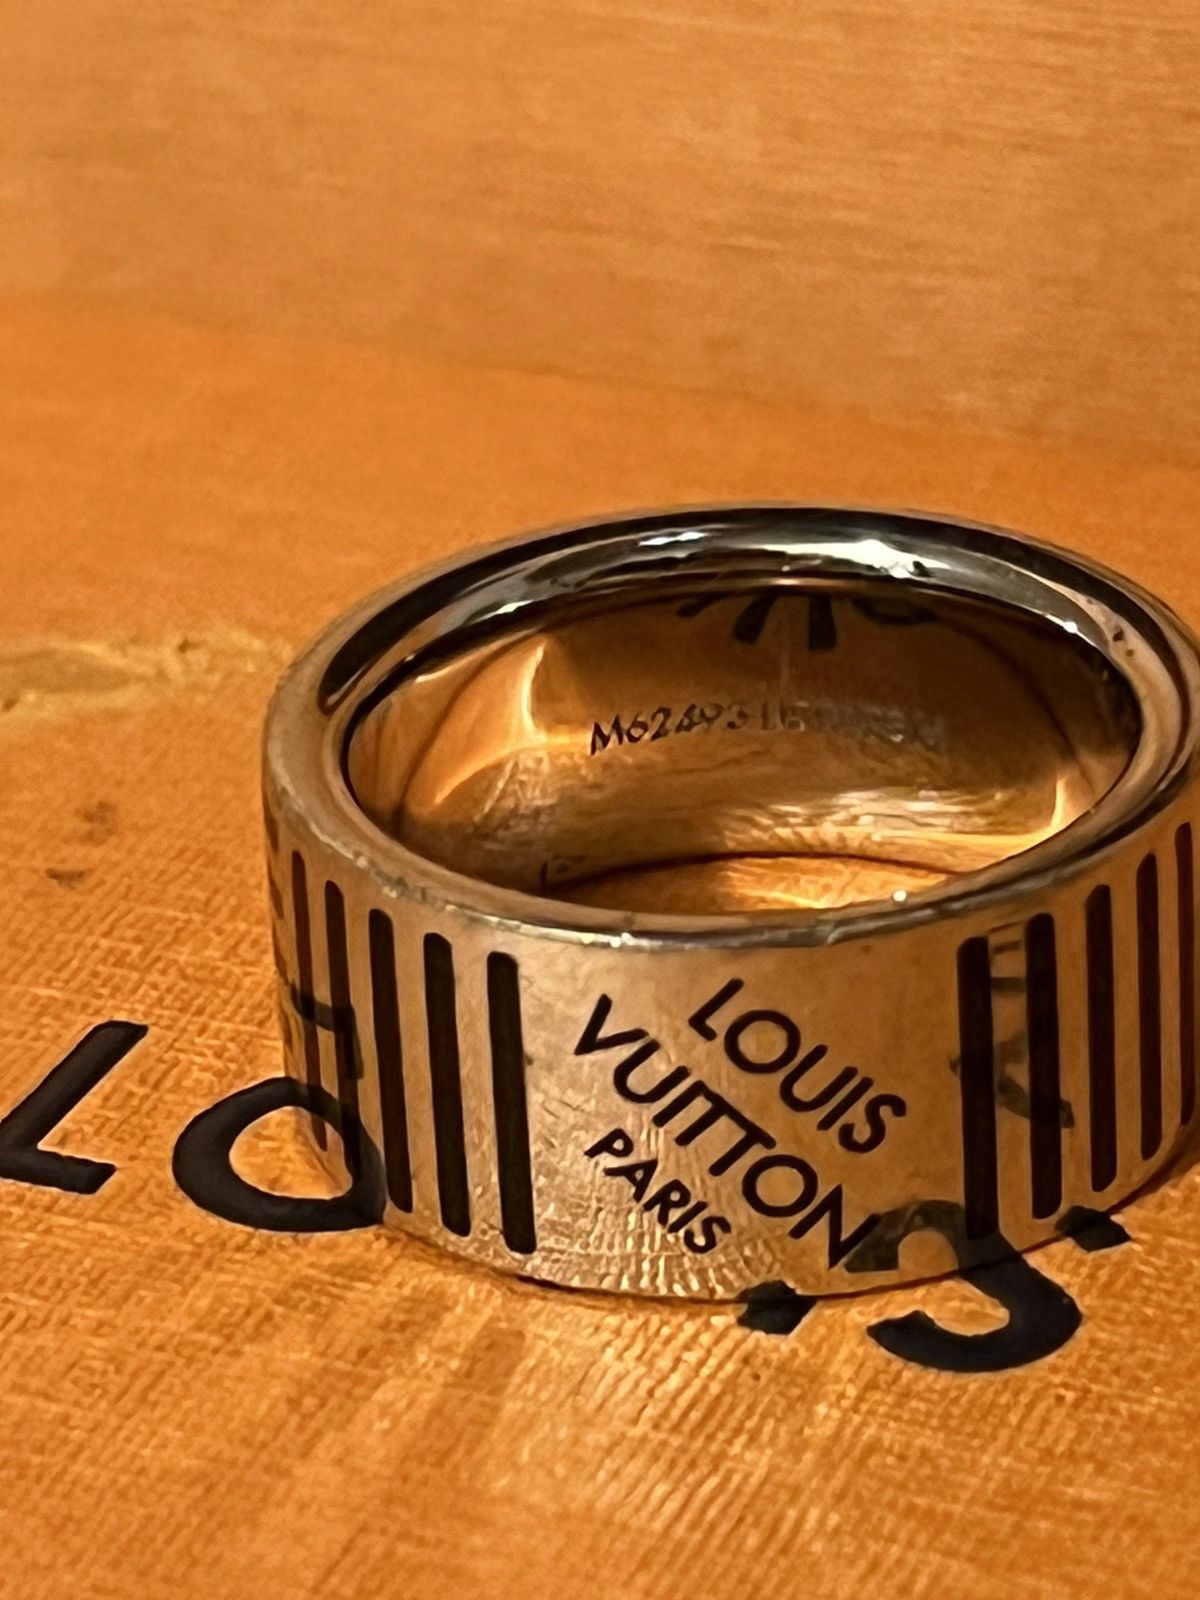 Louis Vuitton Damier Black Ring (M62493)